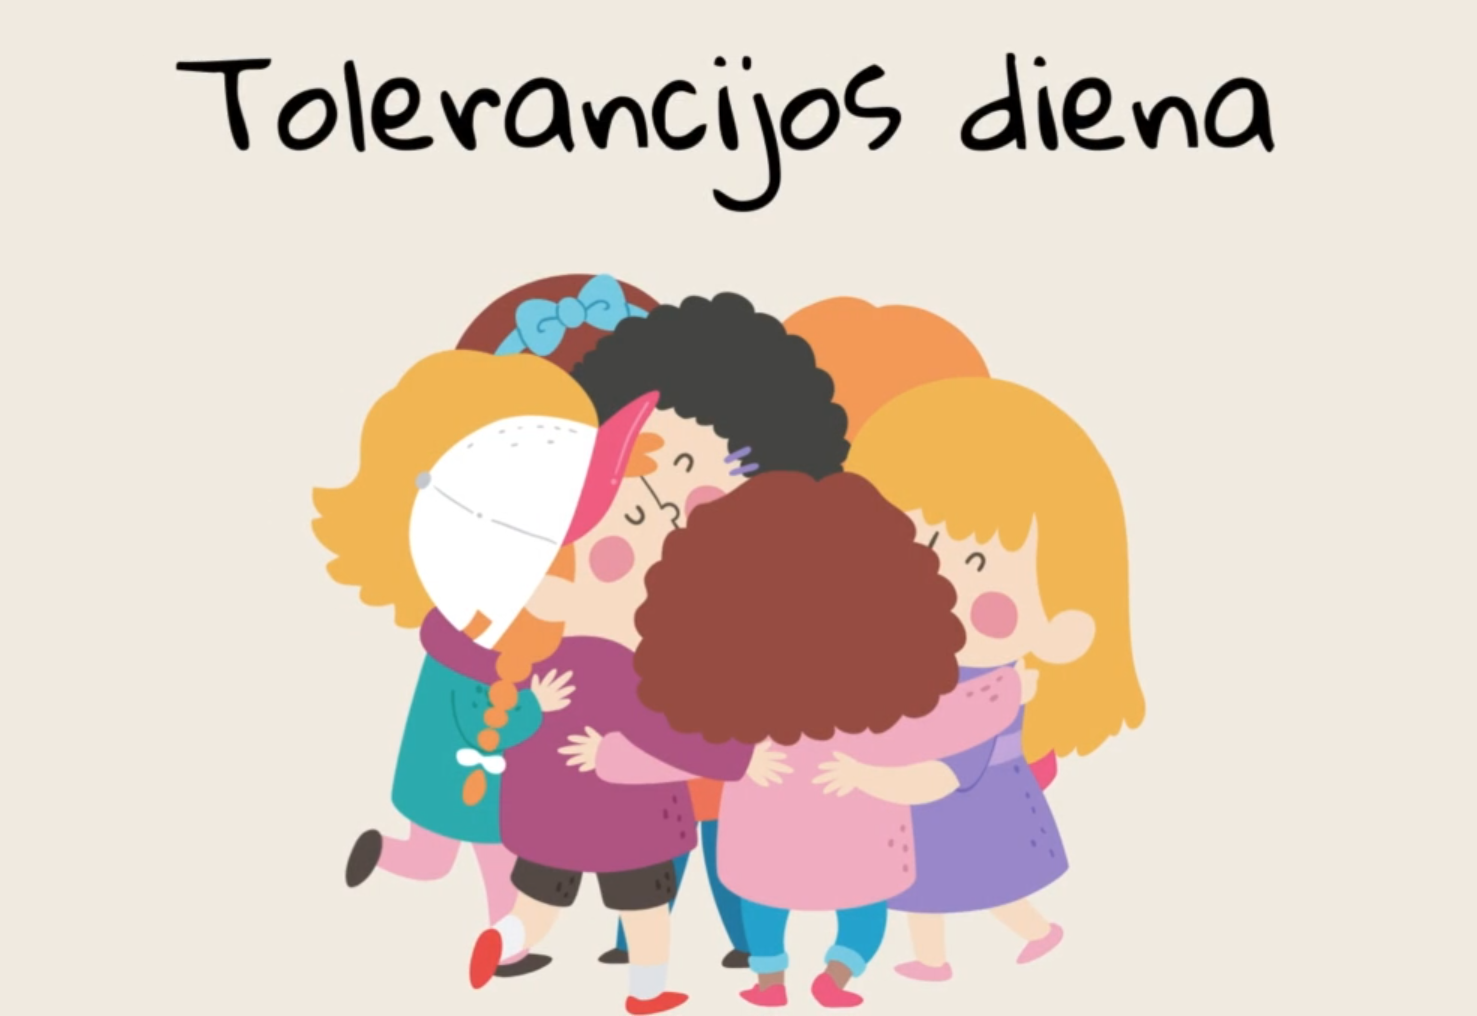 Tolerancijos diena